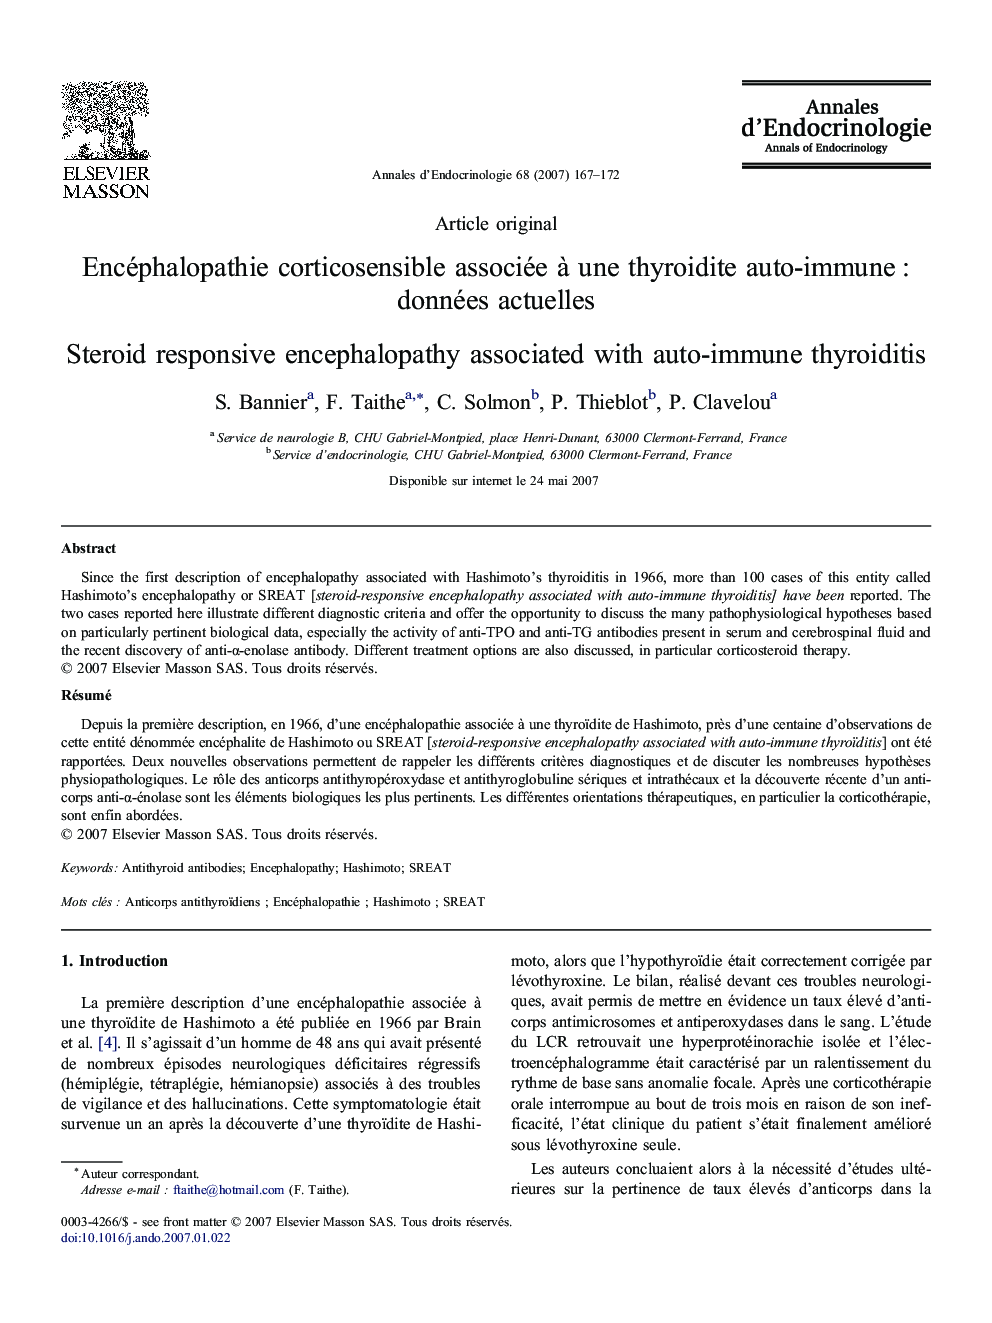 Encéphalopathie corticosensible associée à une thyroidite auto-immune : données actuelles